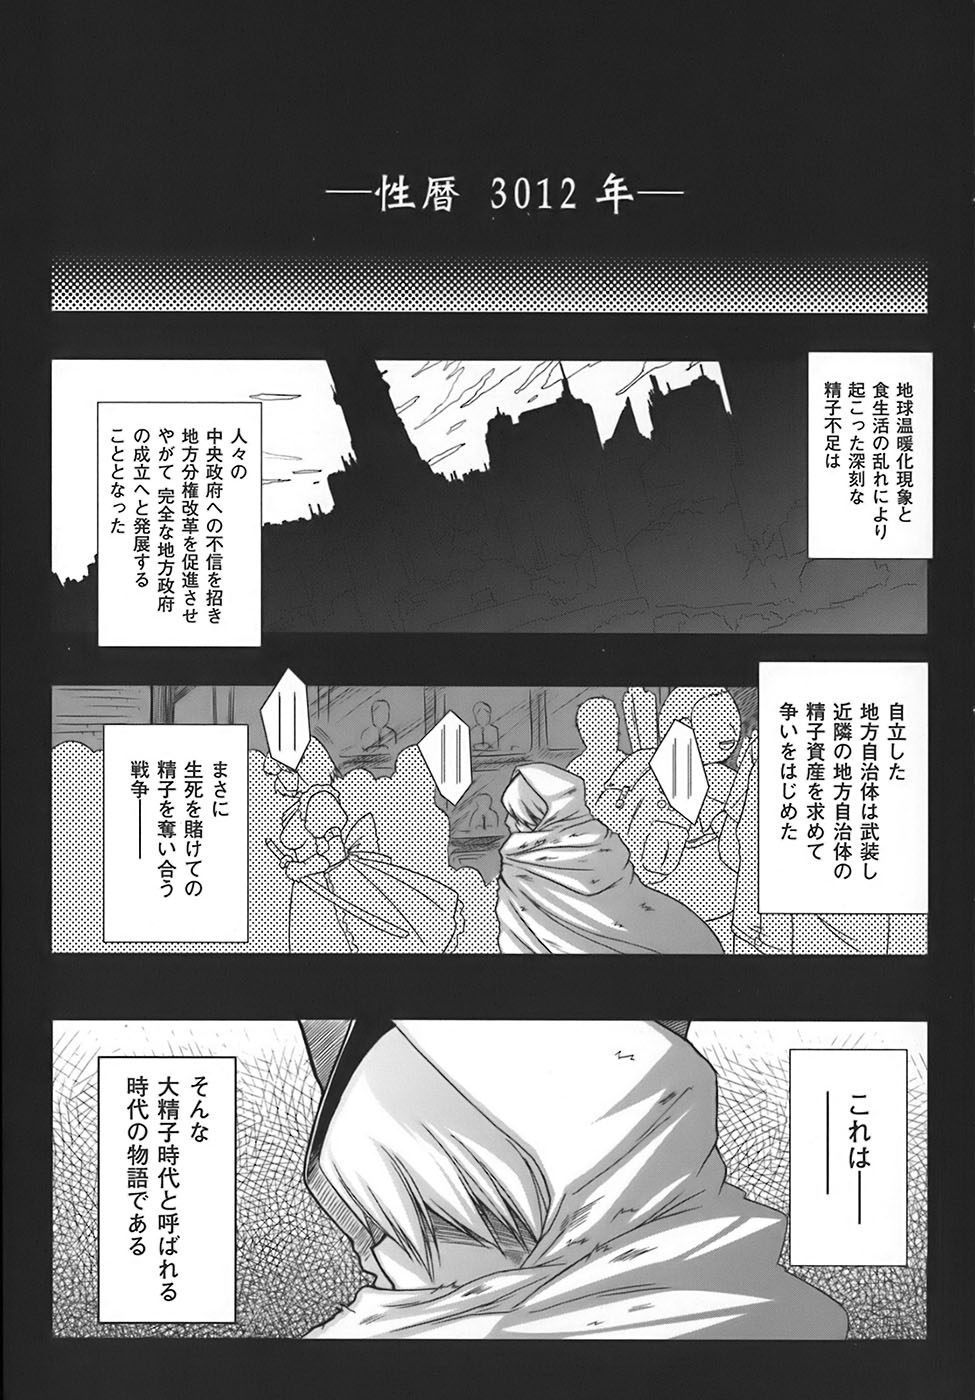 [Oohashi Takayuki] World is mine page 6 full